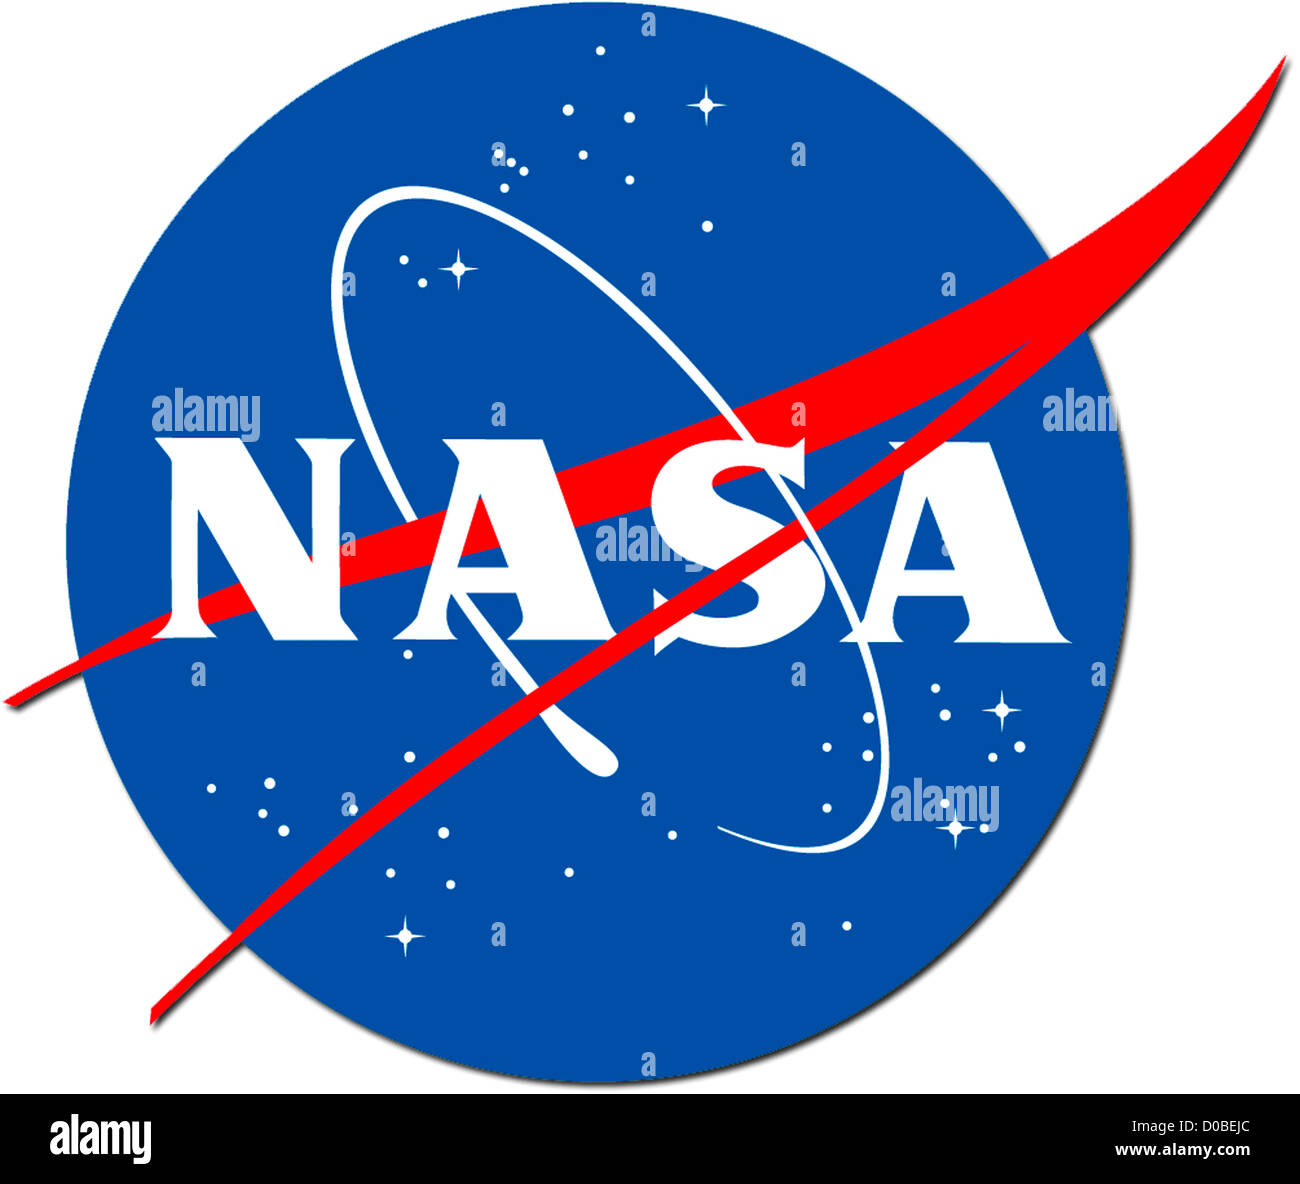 Logotipo de la empresa NASA - Administración Nacional de Aeronáutica y del espacio. Foto de stock